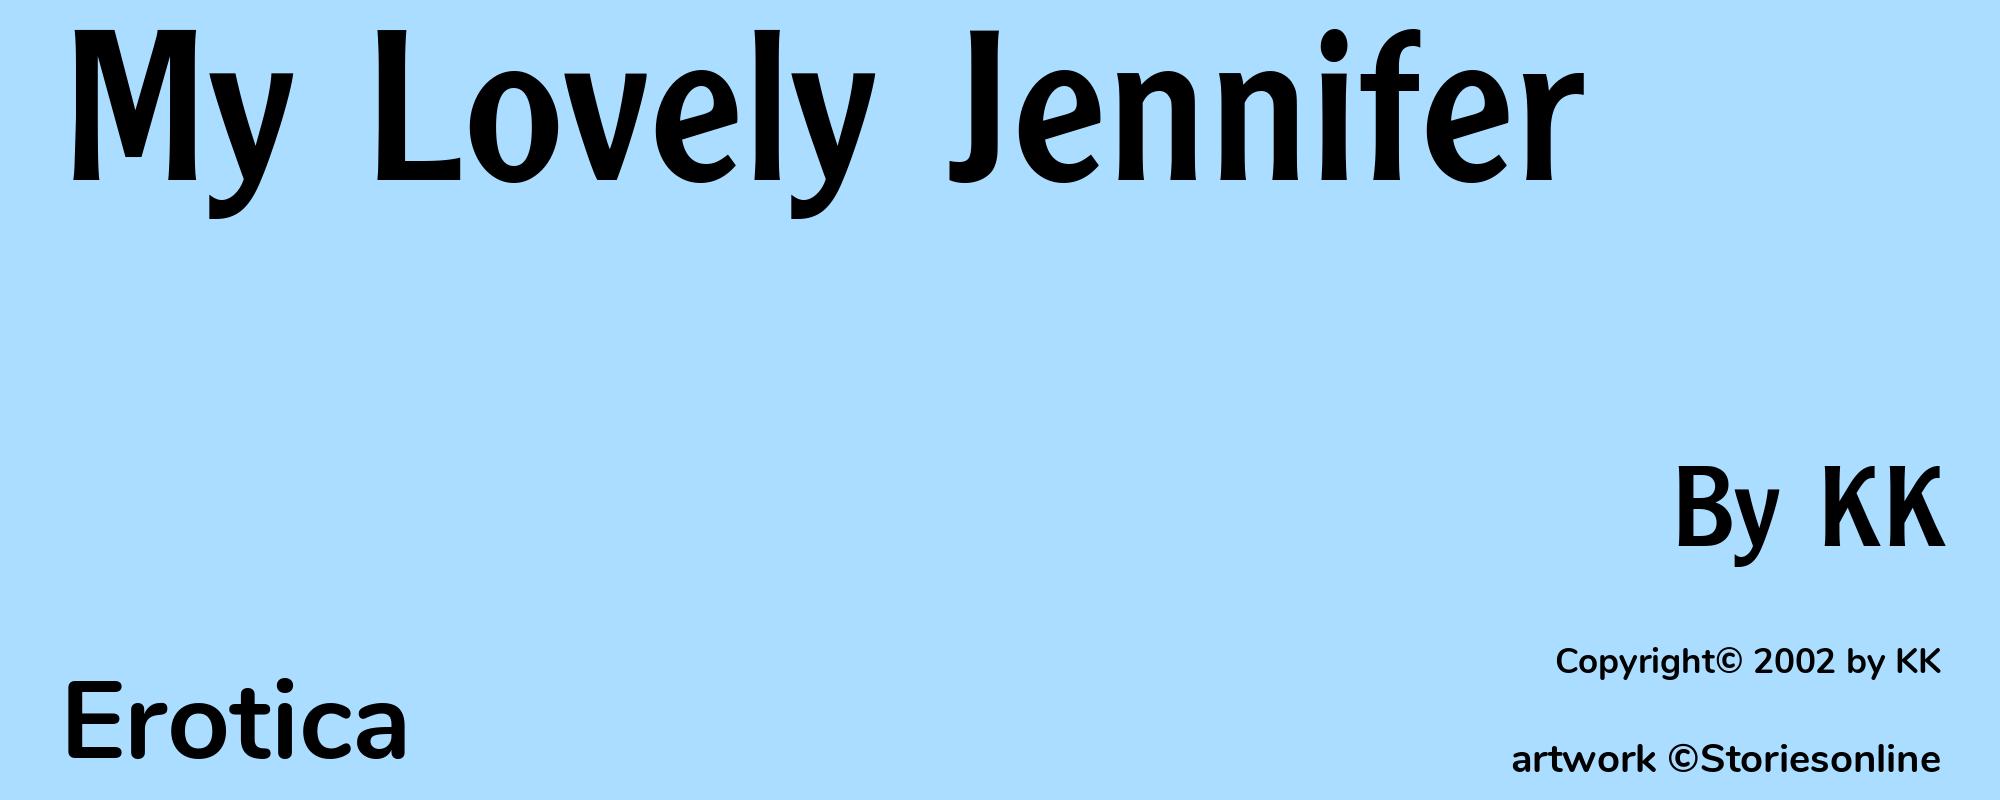 My Lovely Jennifer - Cover